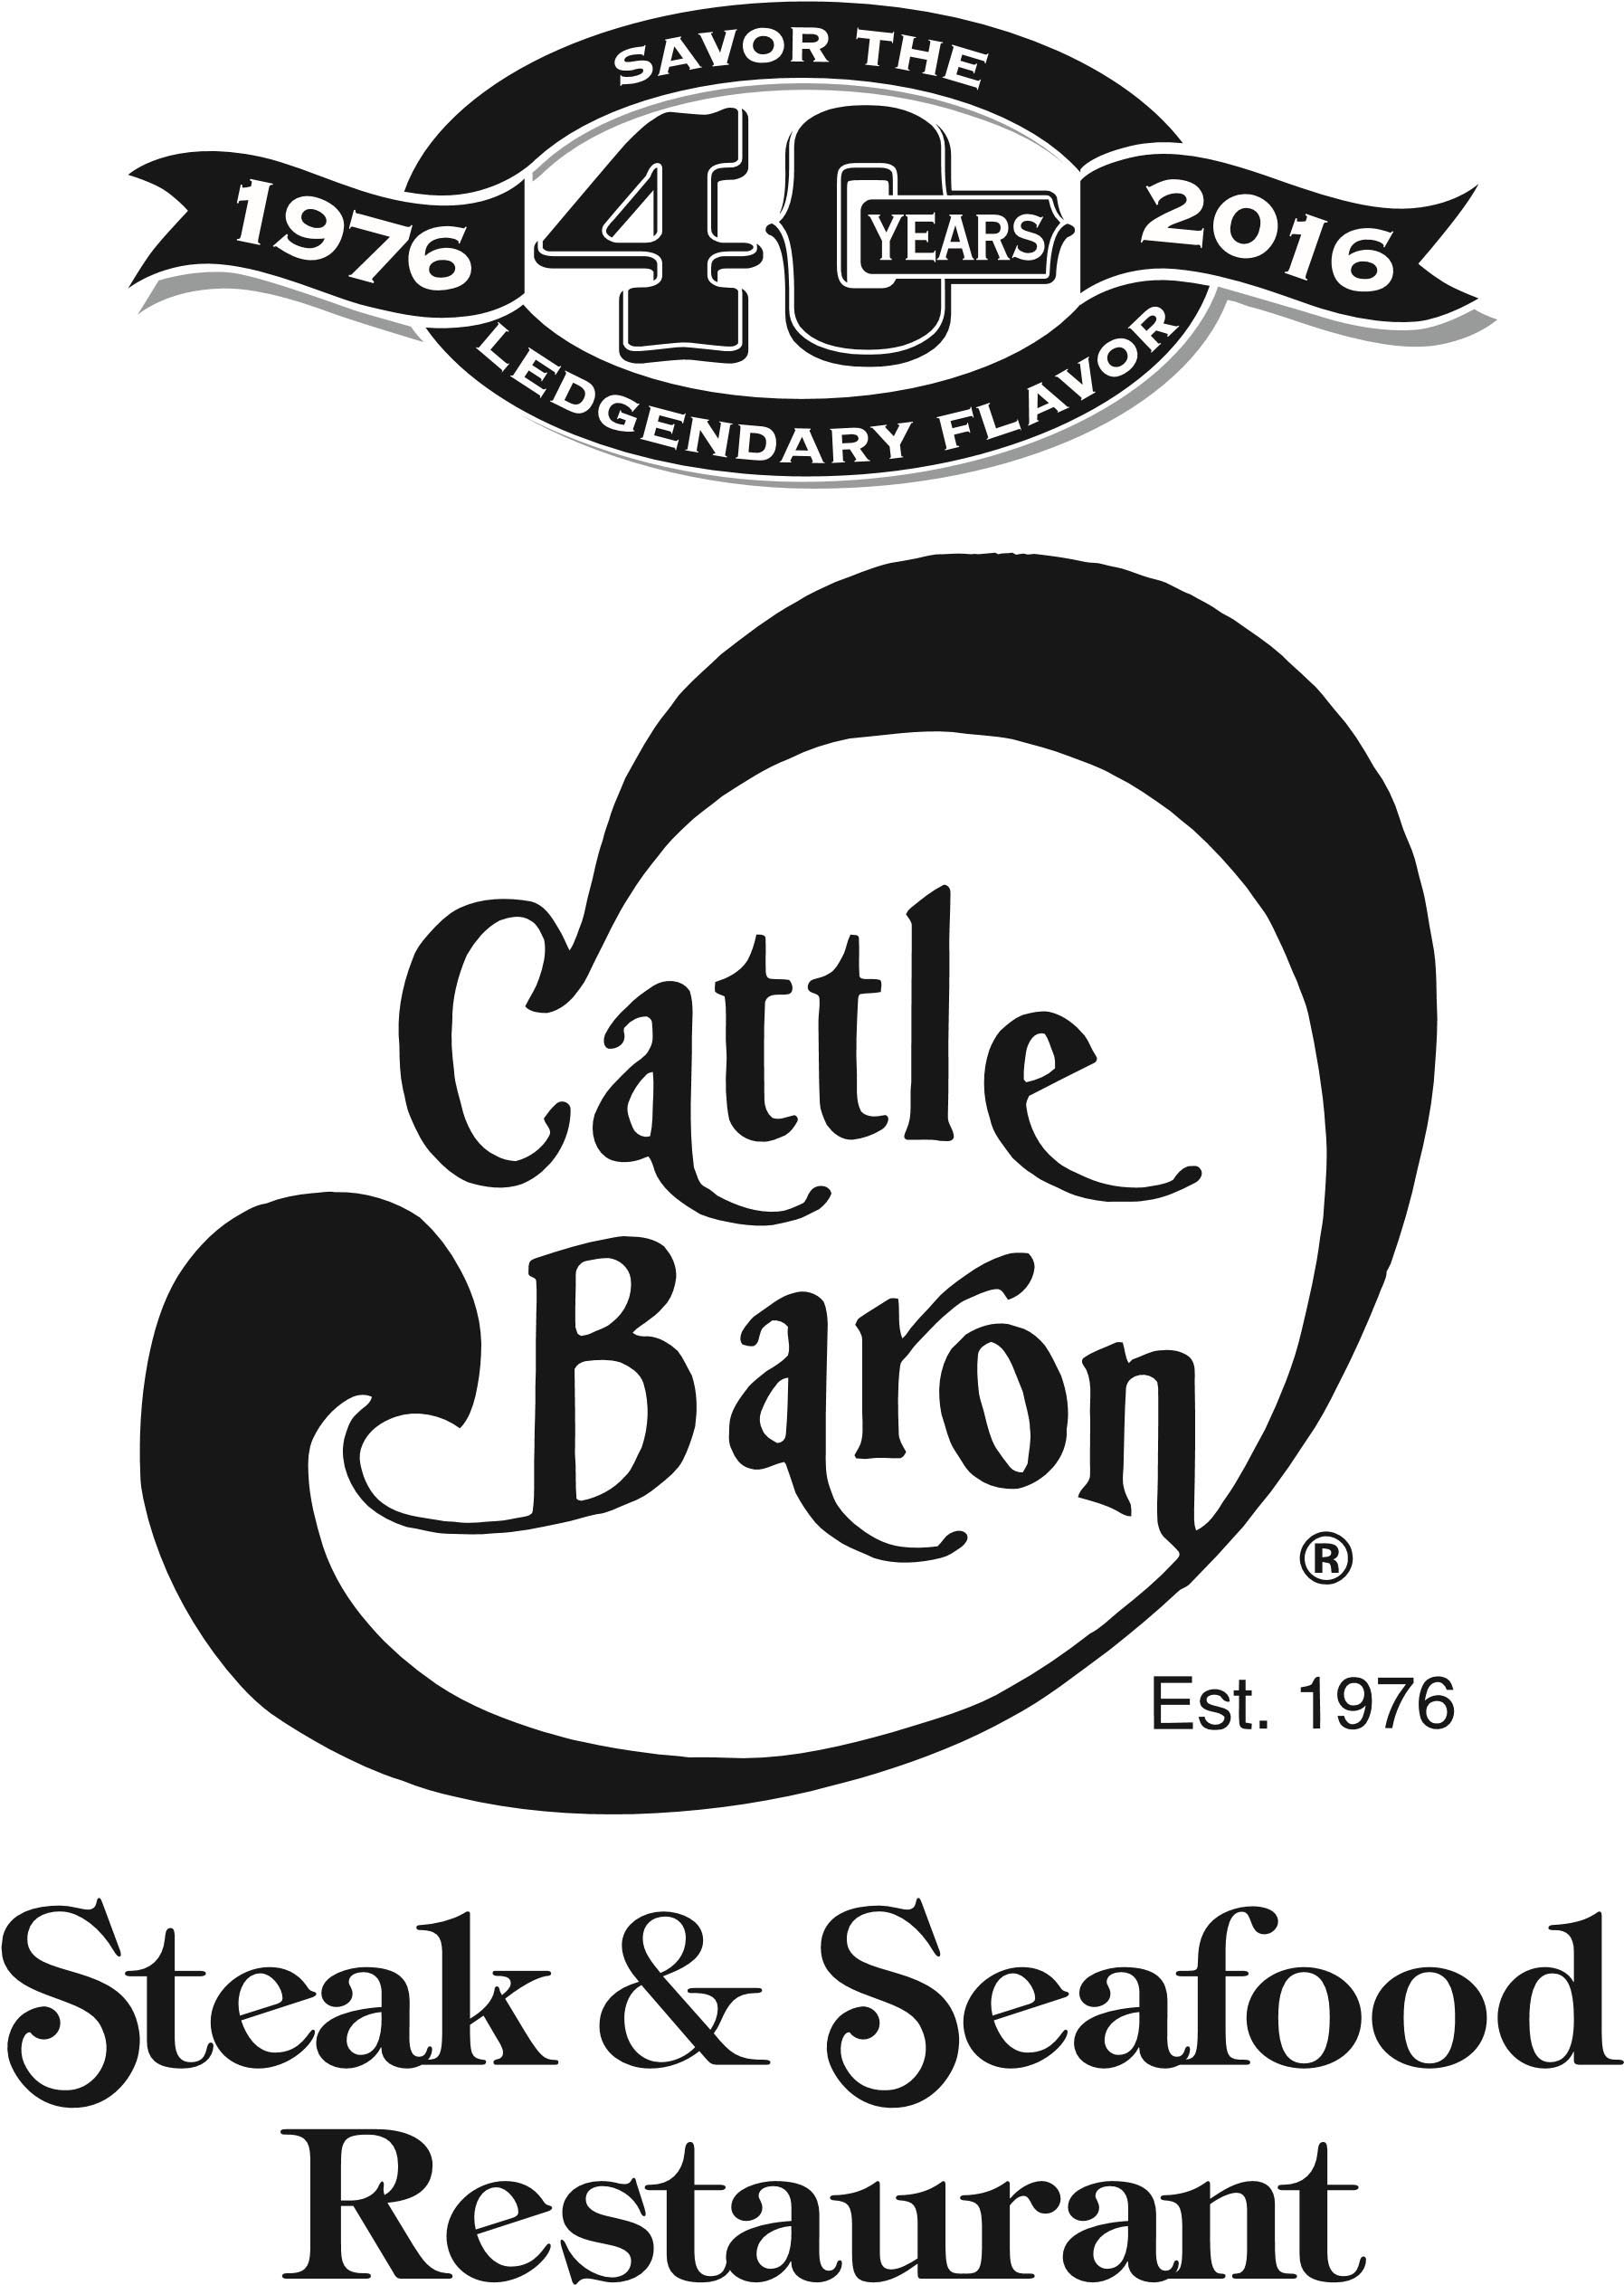 Cattle Baron - Airway logo